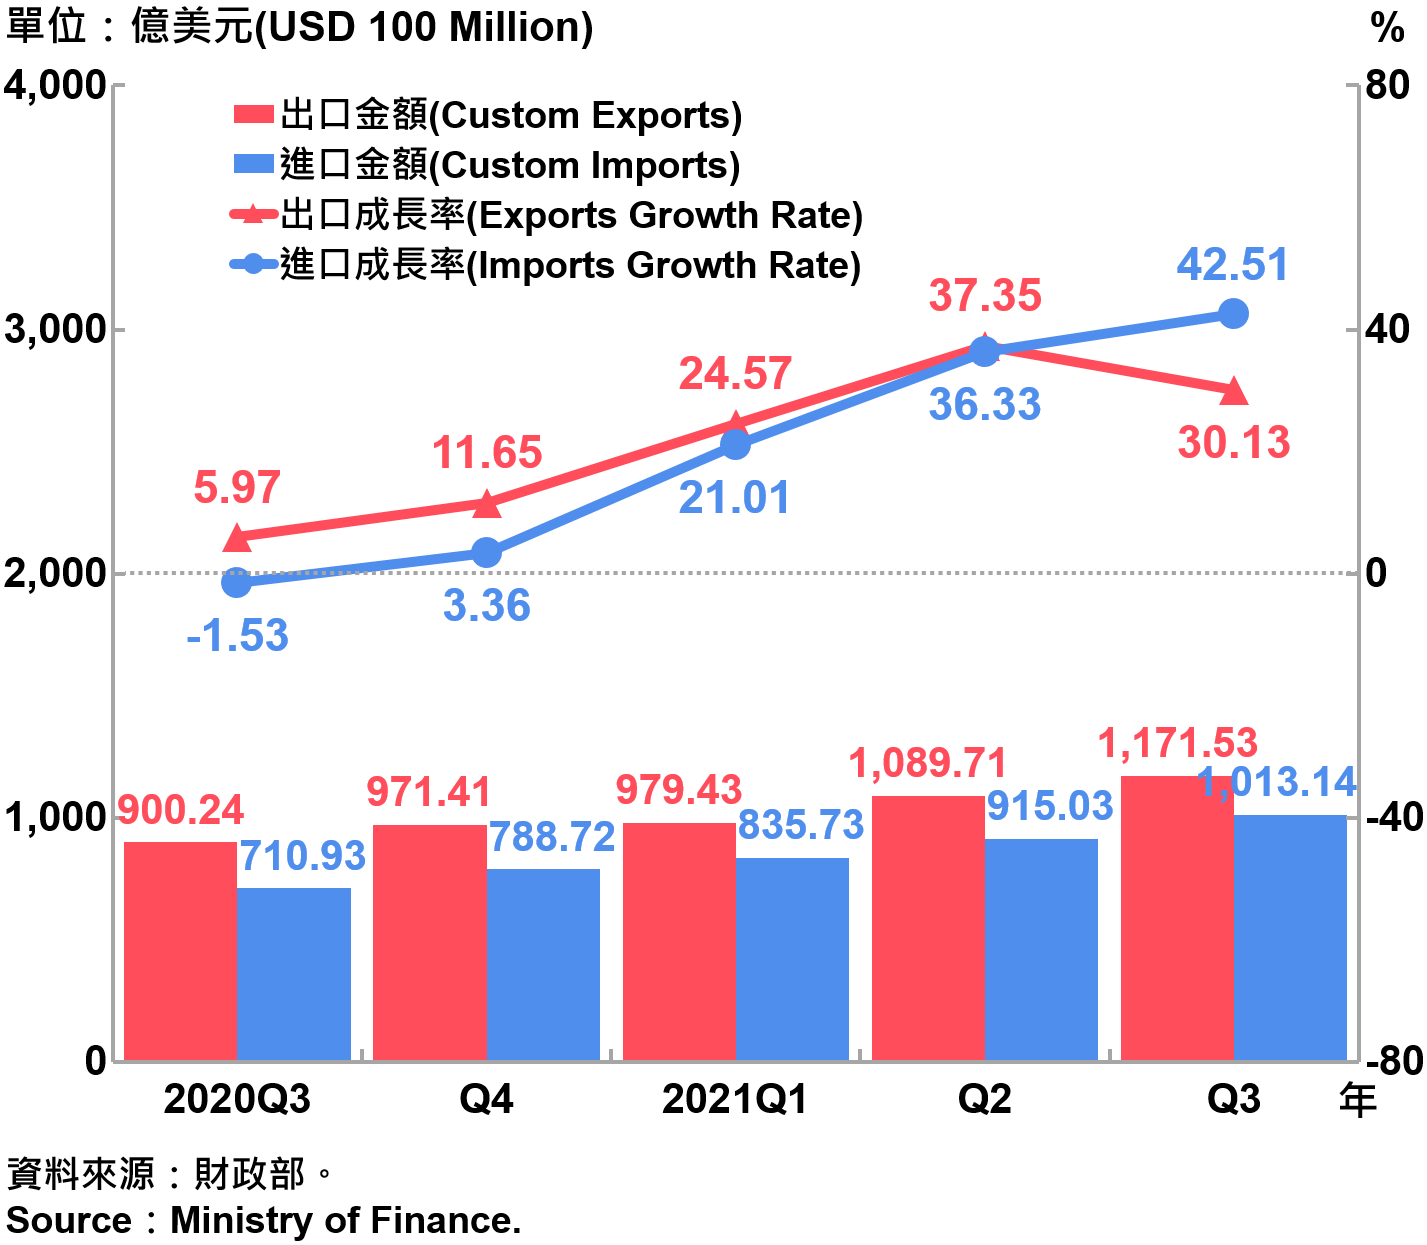 臺灣海關進出口金額與成長率 Custom Exports, Custom Imports and Growth Rate in Taiwan